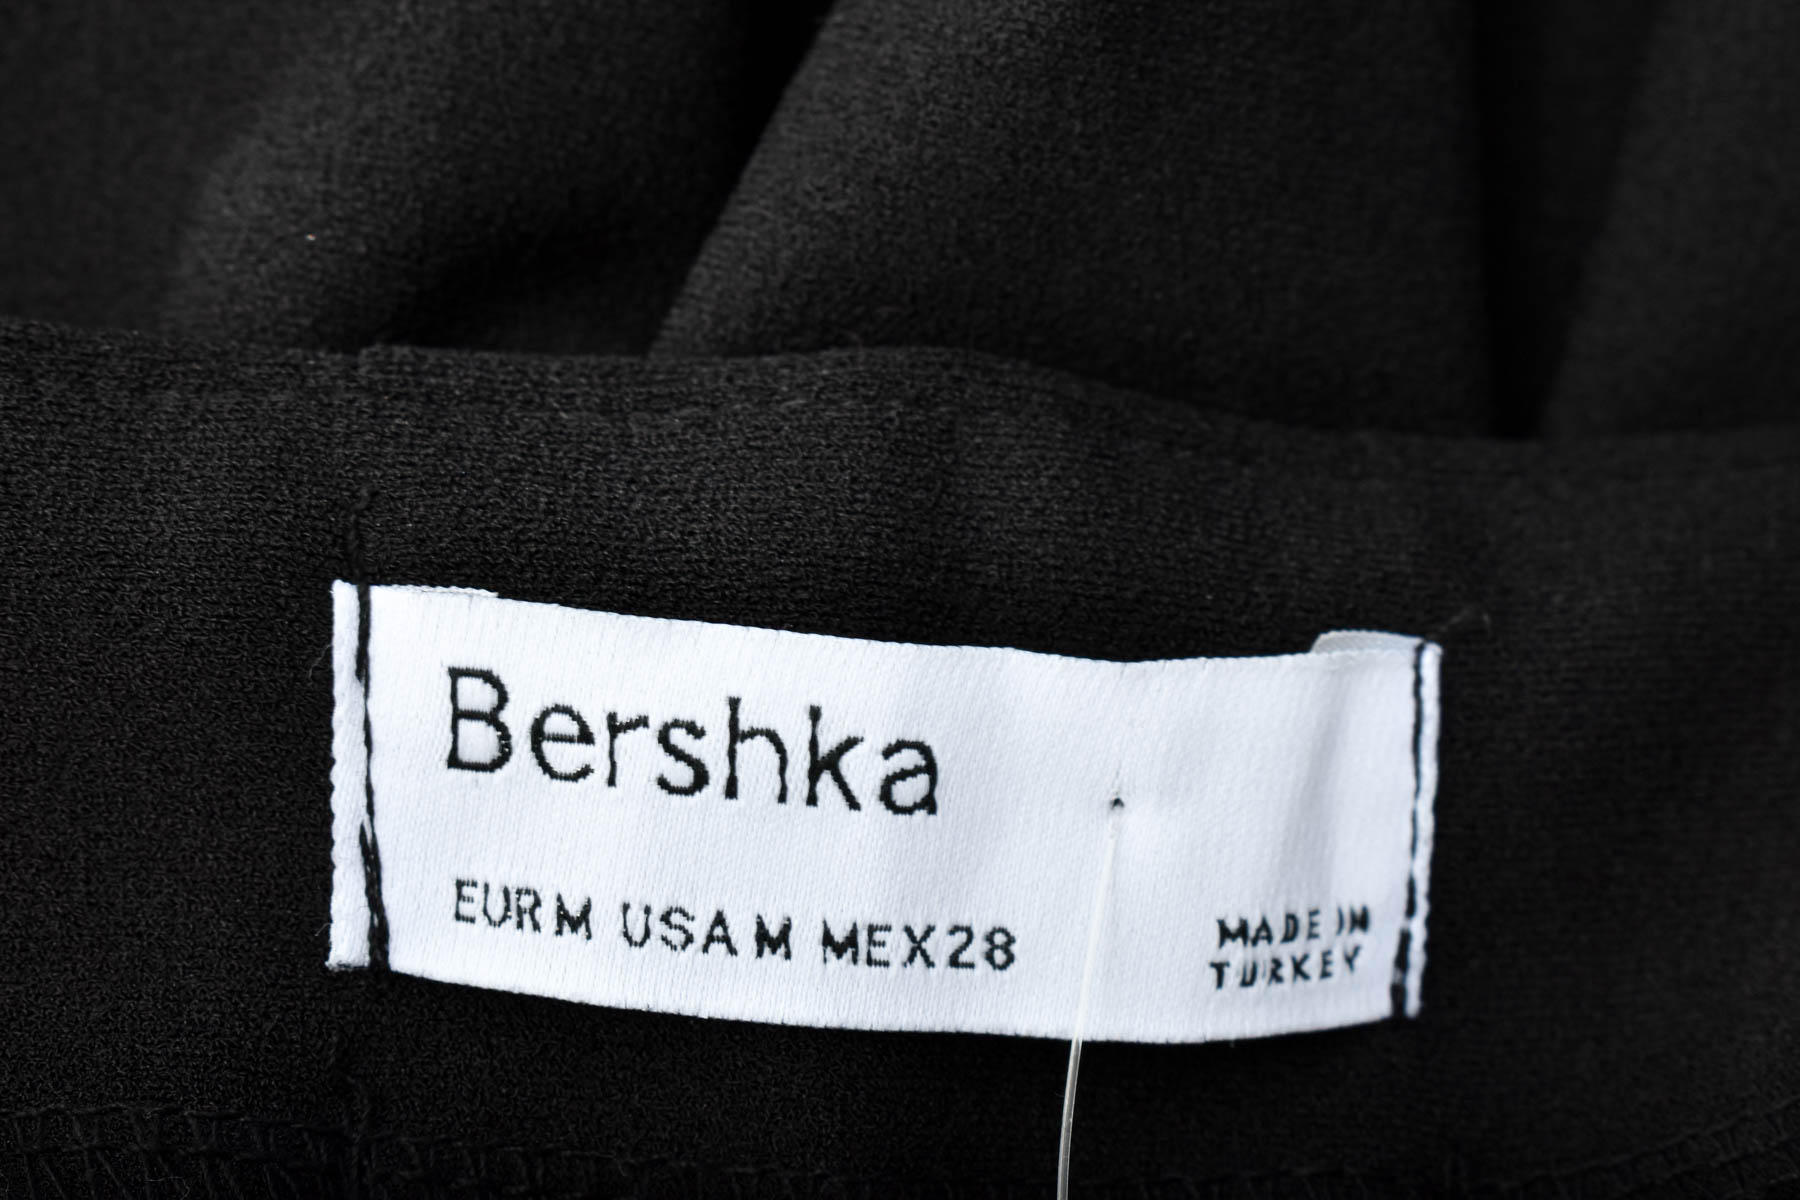 Skirt - Bershka - 2